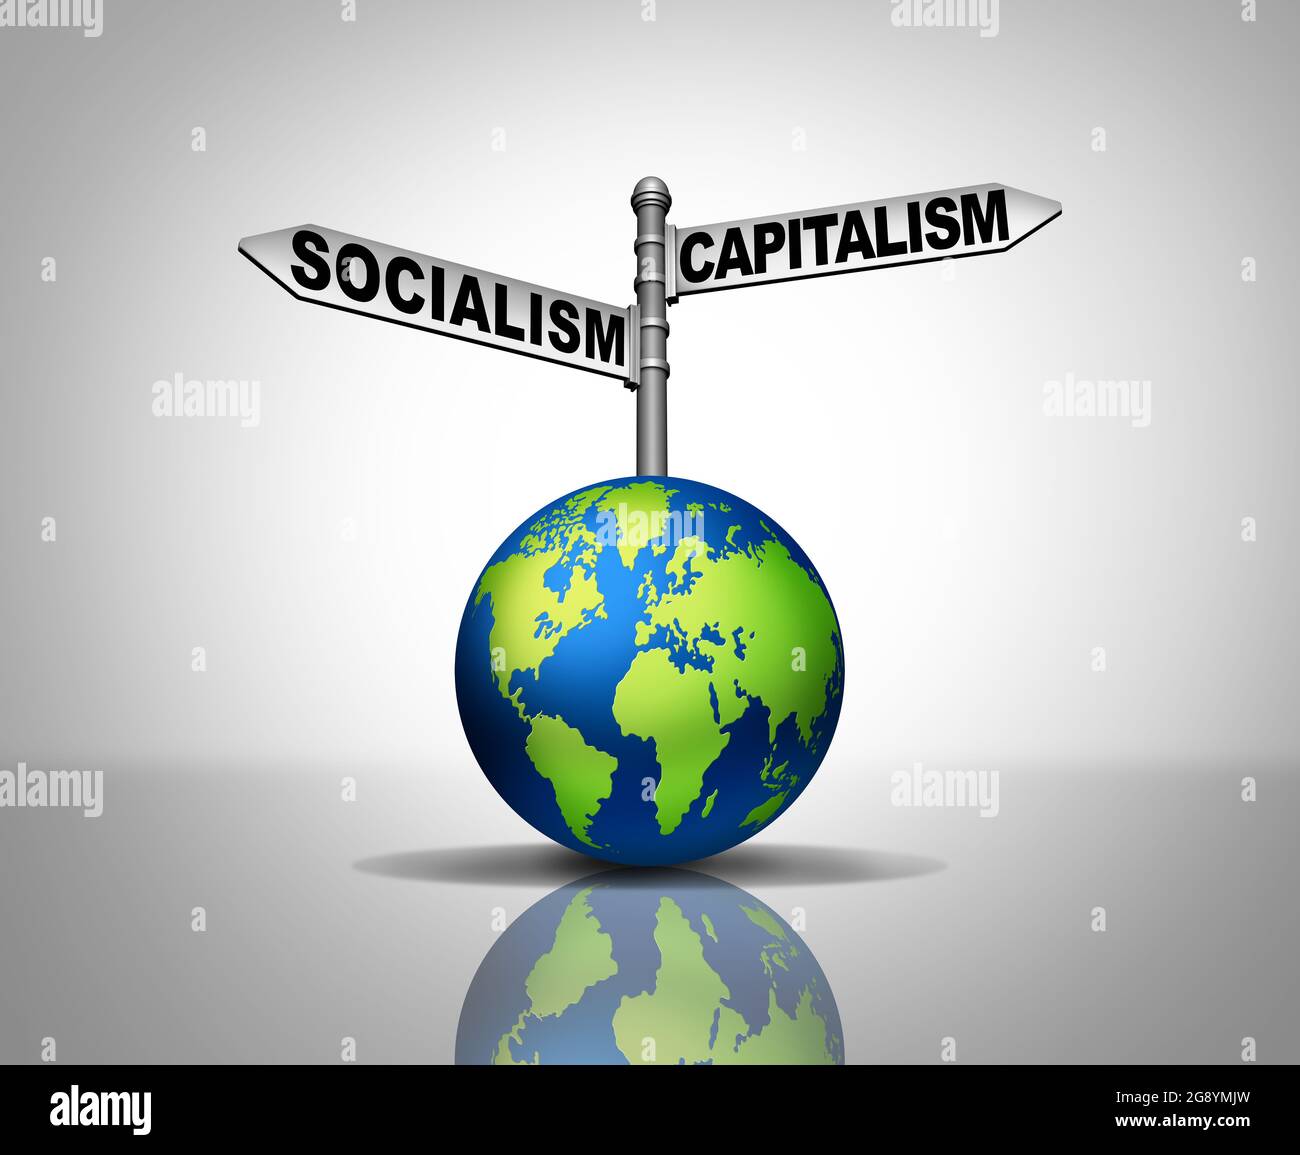 Il socialismo e il capitalismo sono simbolo di due sistemi economici e politici diversi come scelta per il percorso ideologico sociale globale e la società. Foto Stock